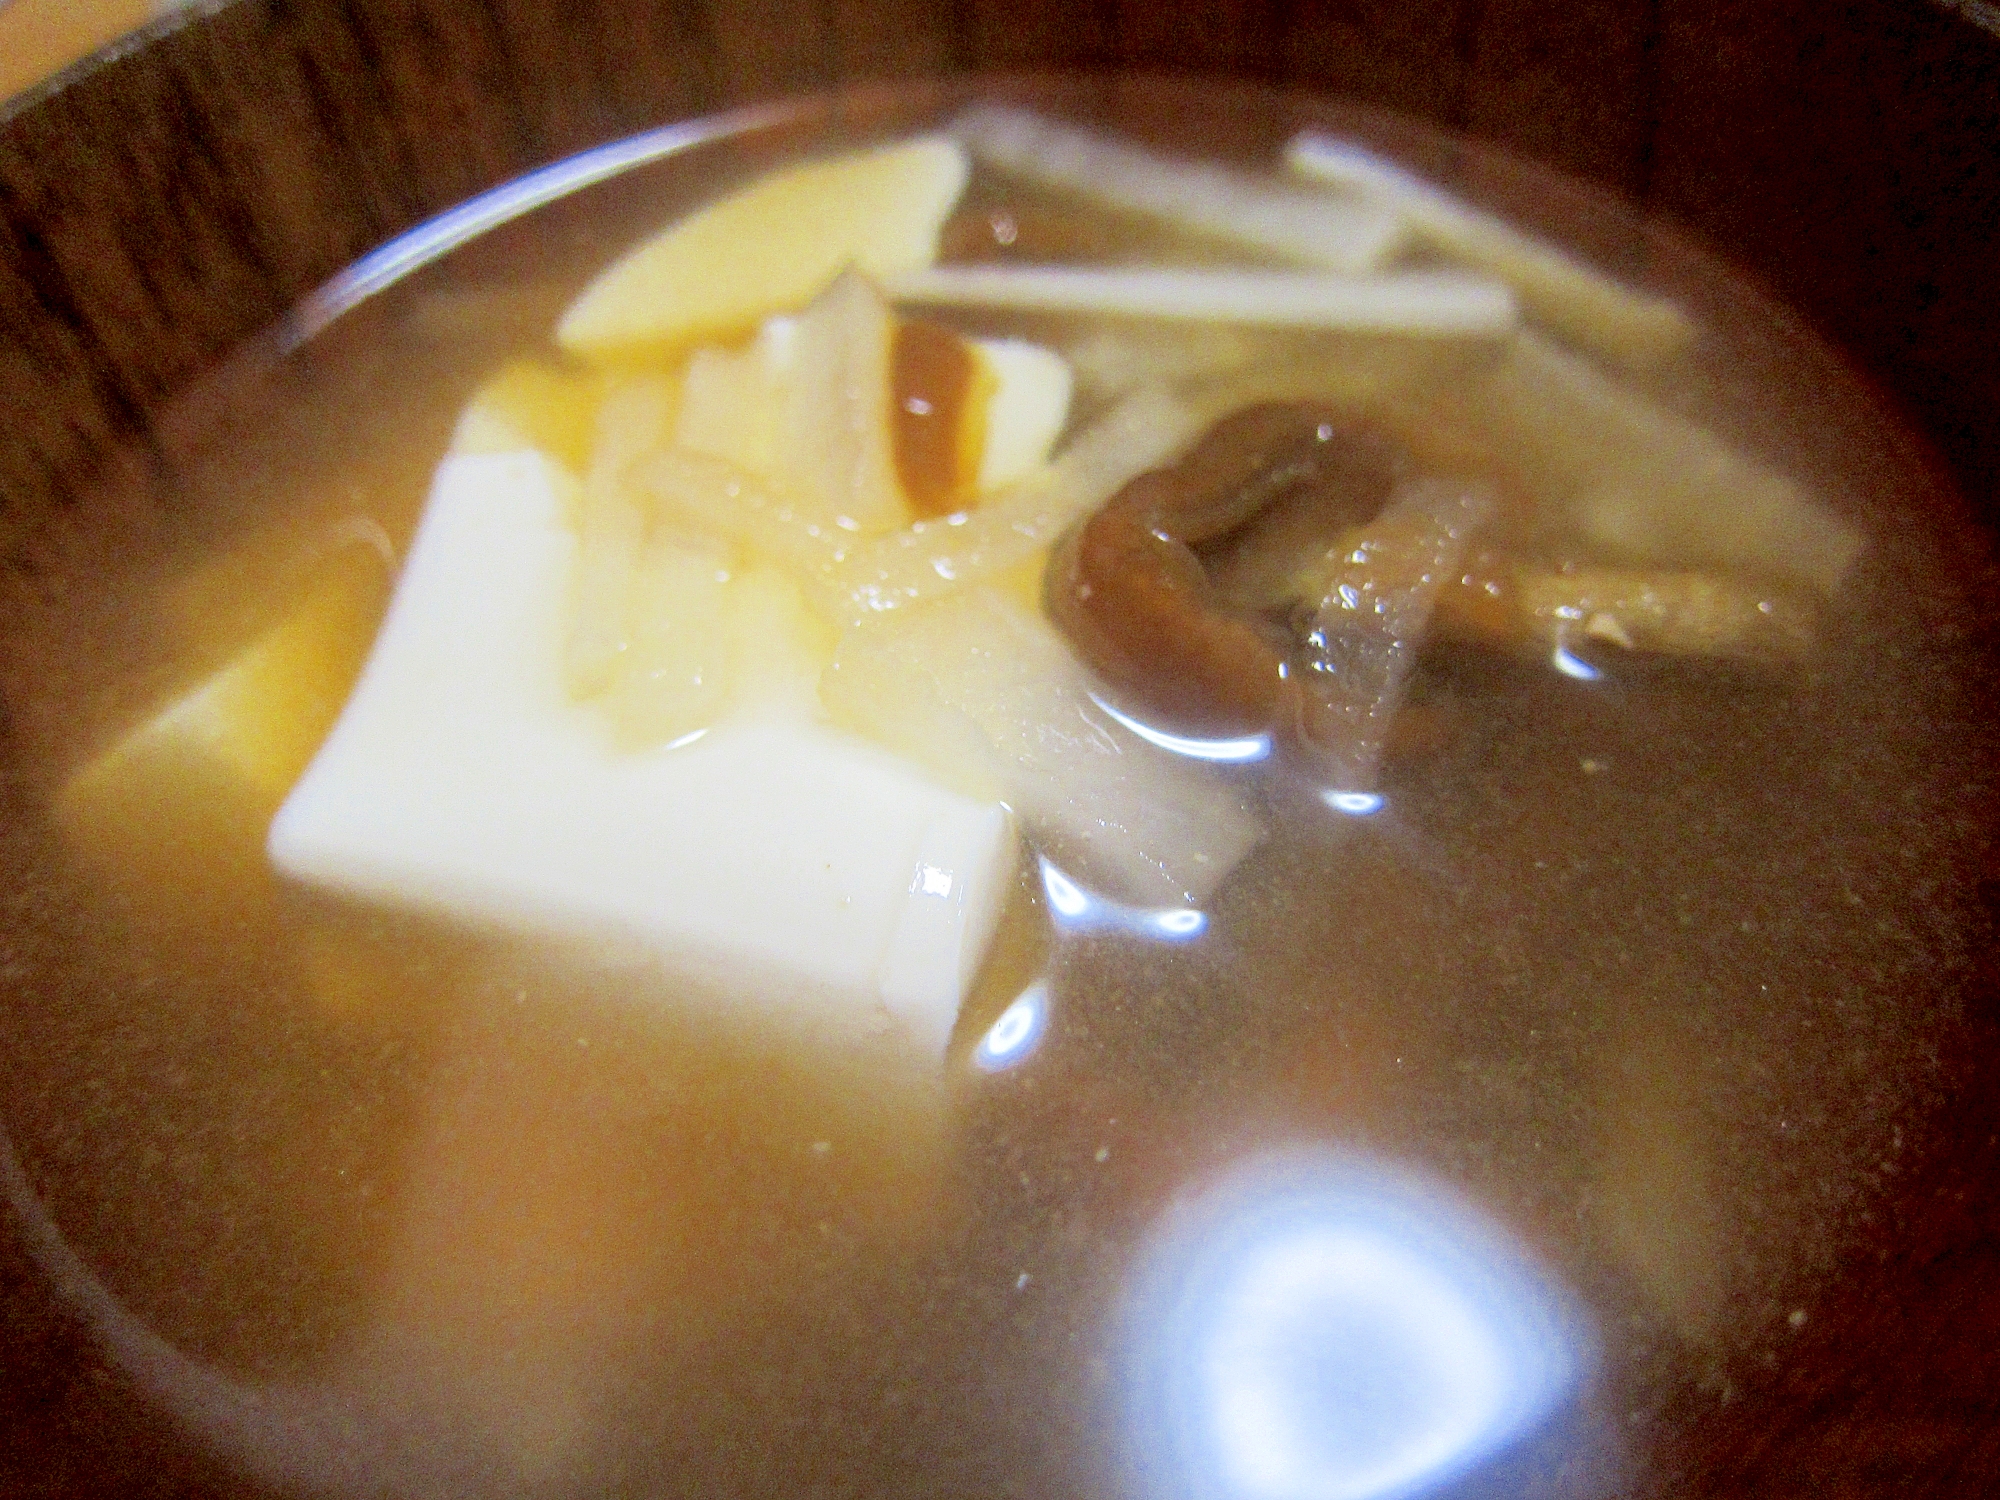 鳥海なめこと豆腐の大根味噌汁グリル